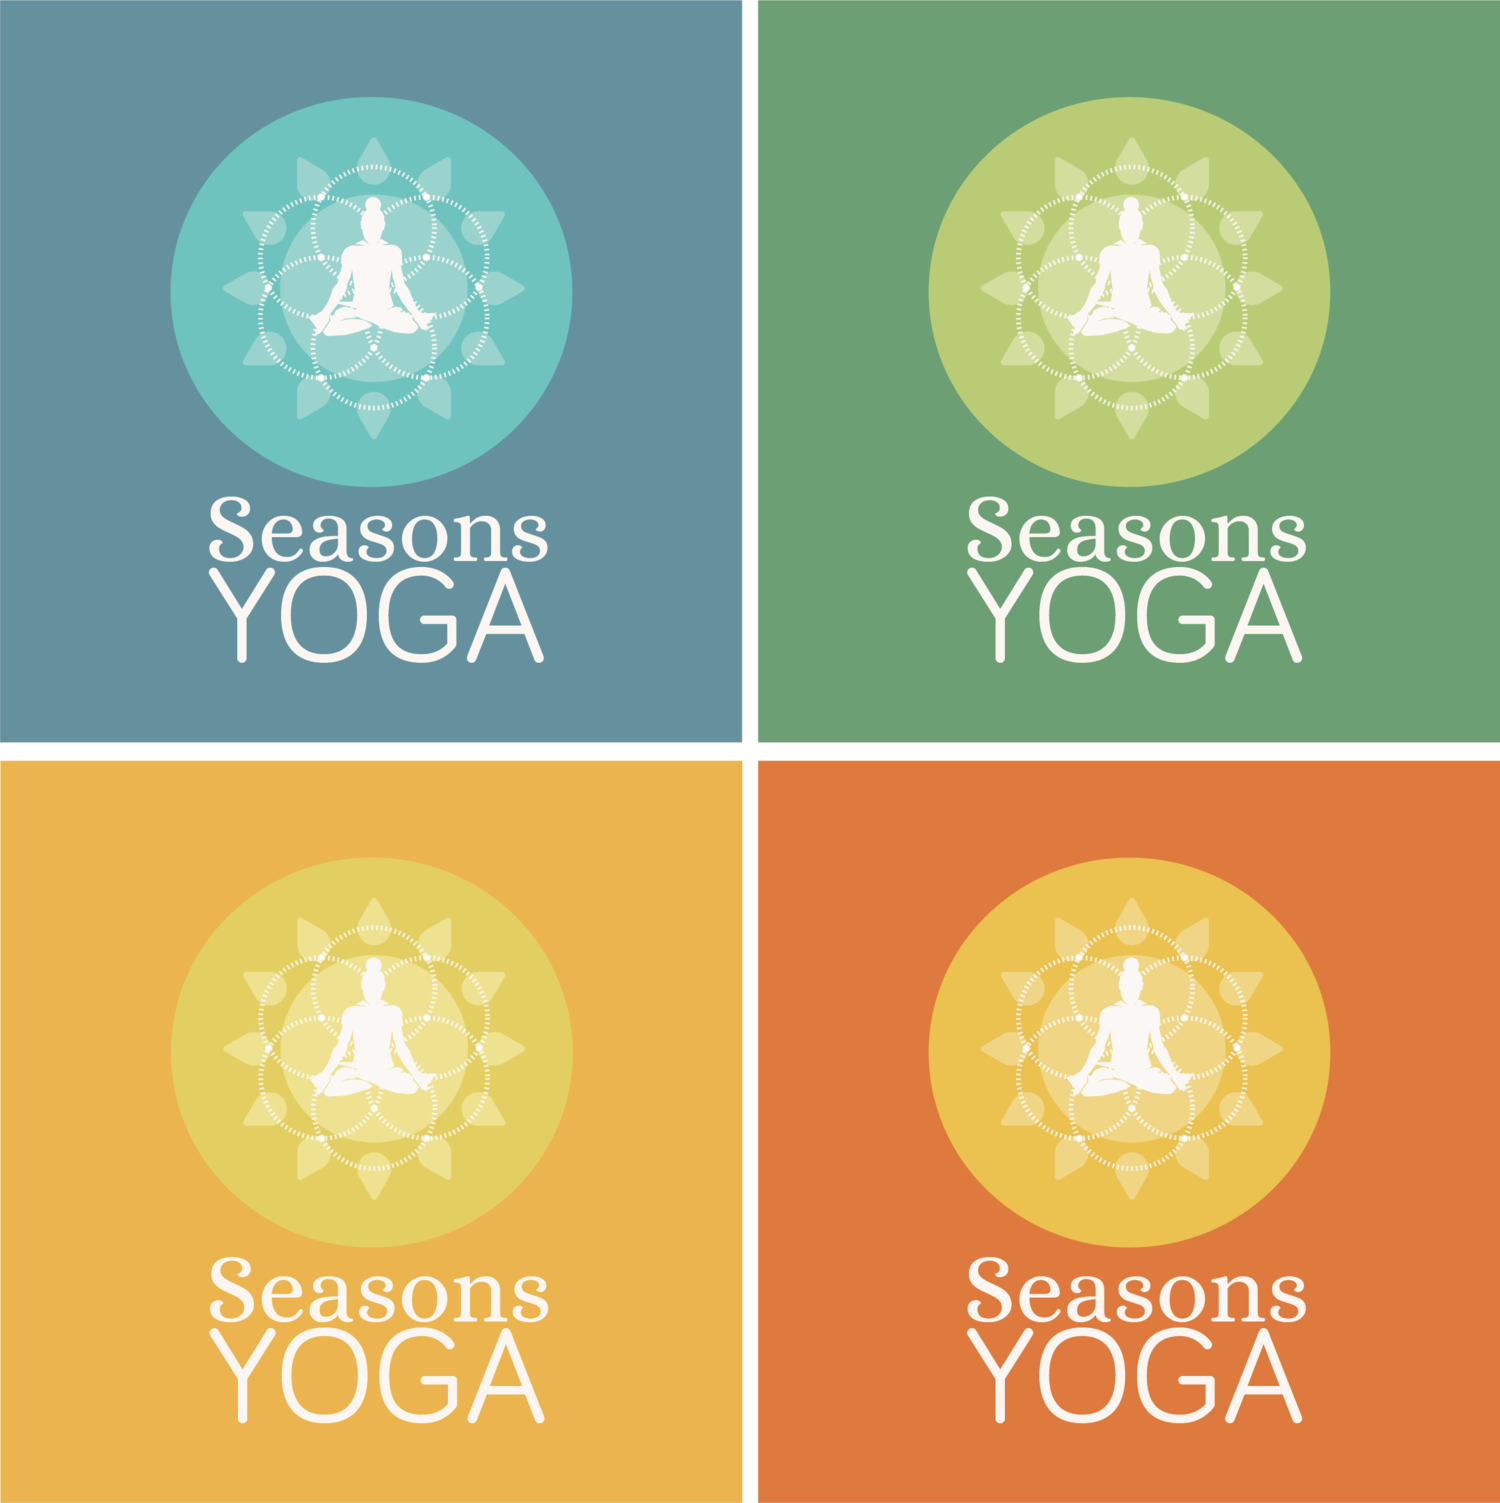 Seasons Yoga